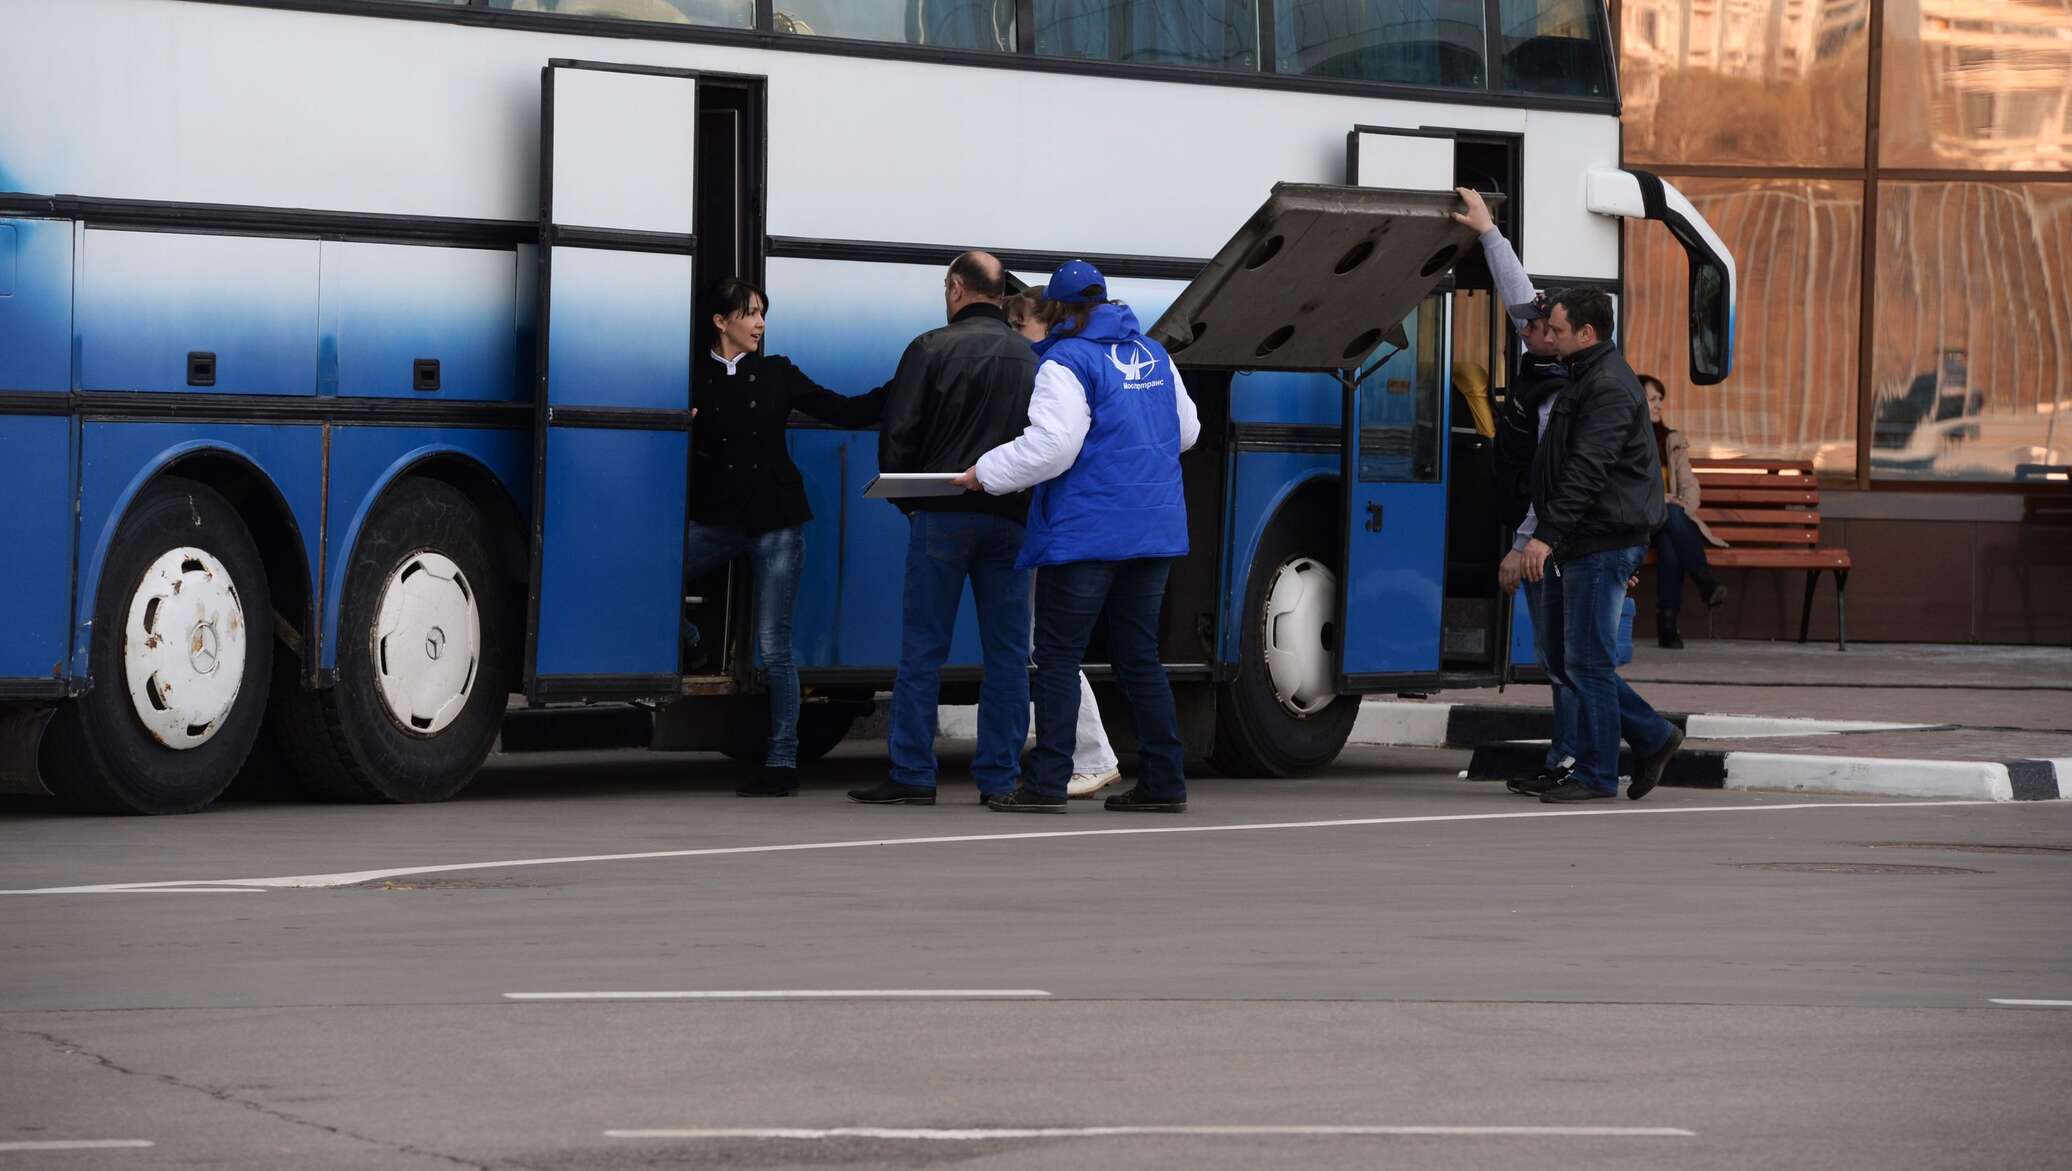 Водитель автобуса в котором к мест продает билеты и по одному пропускает пассажиров в автобус